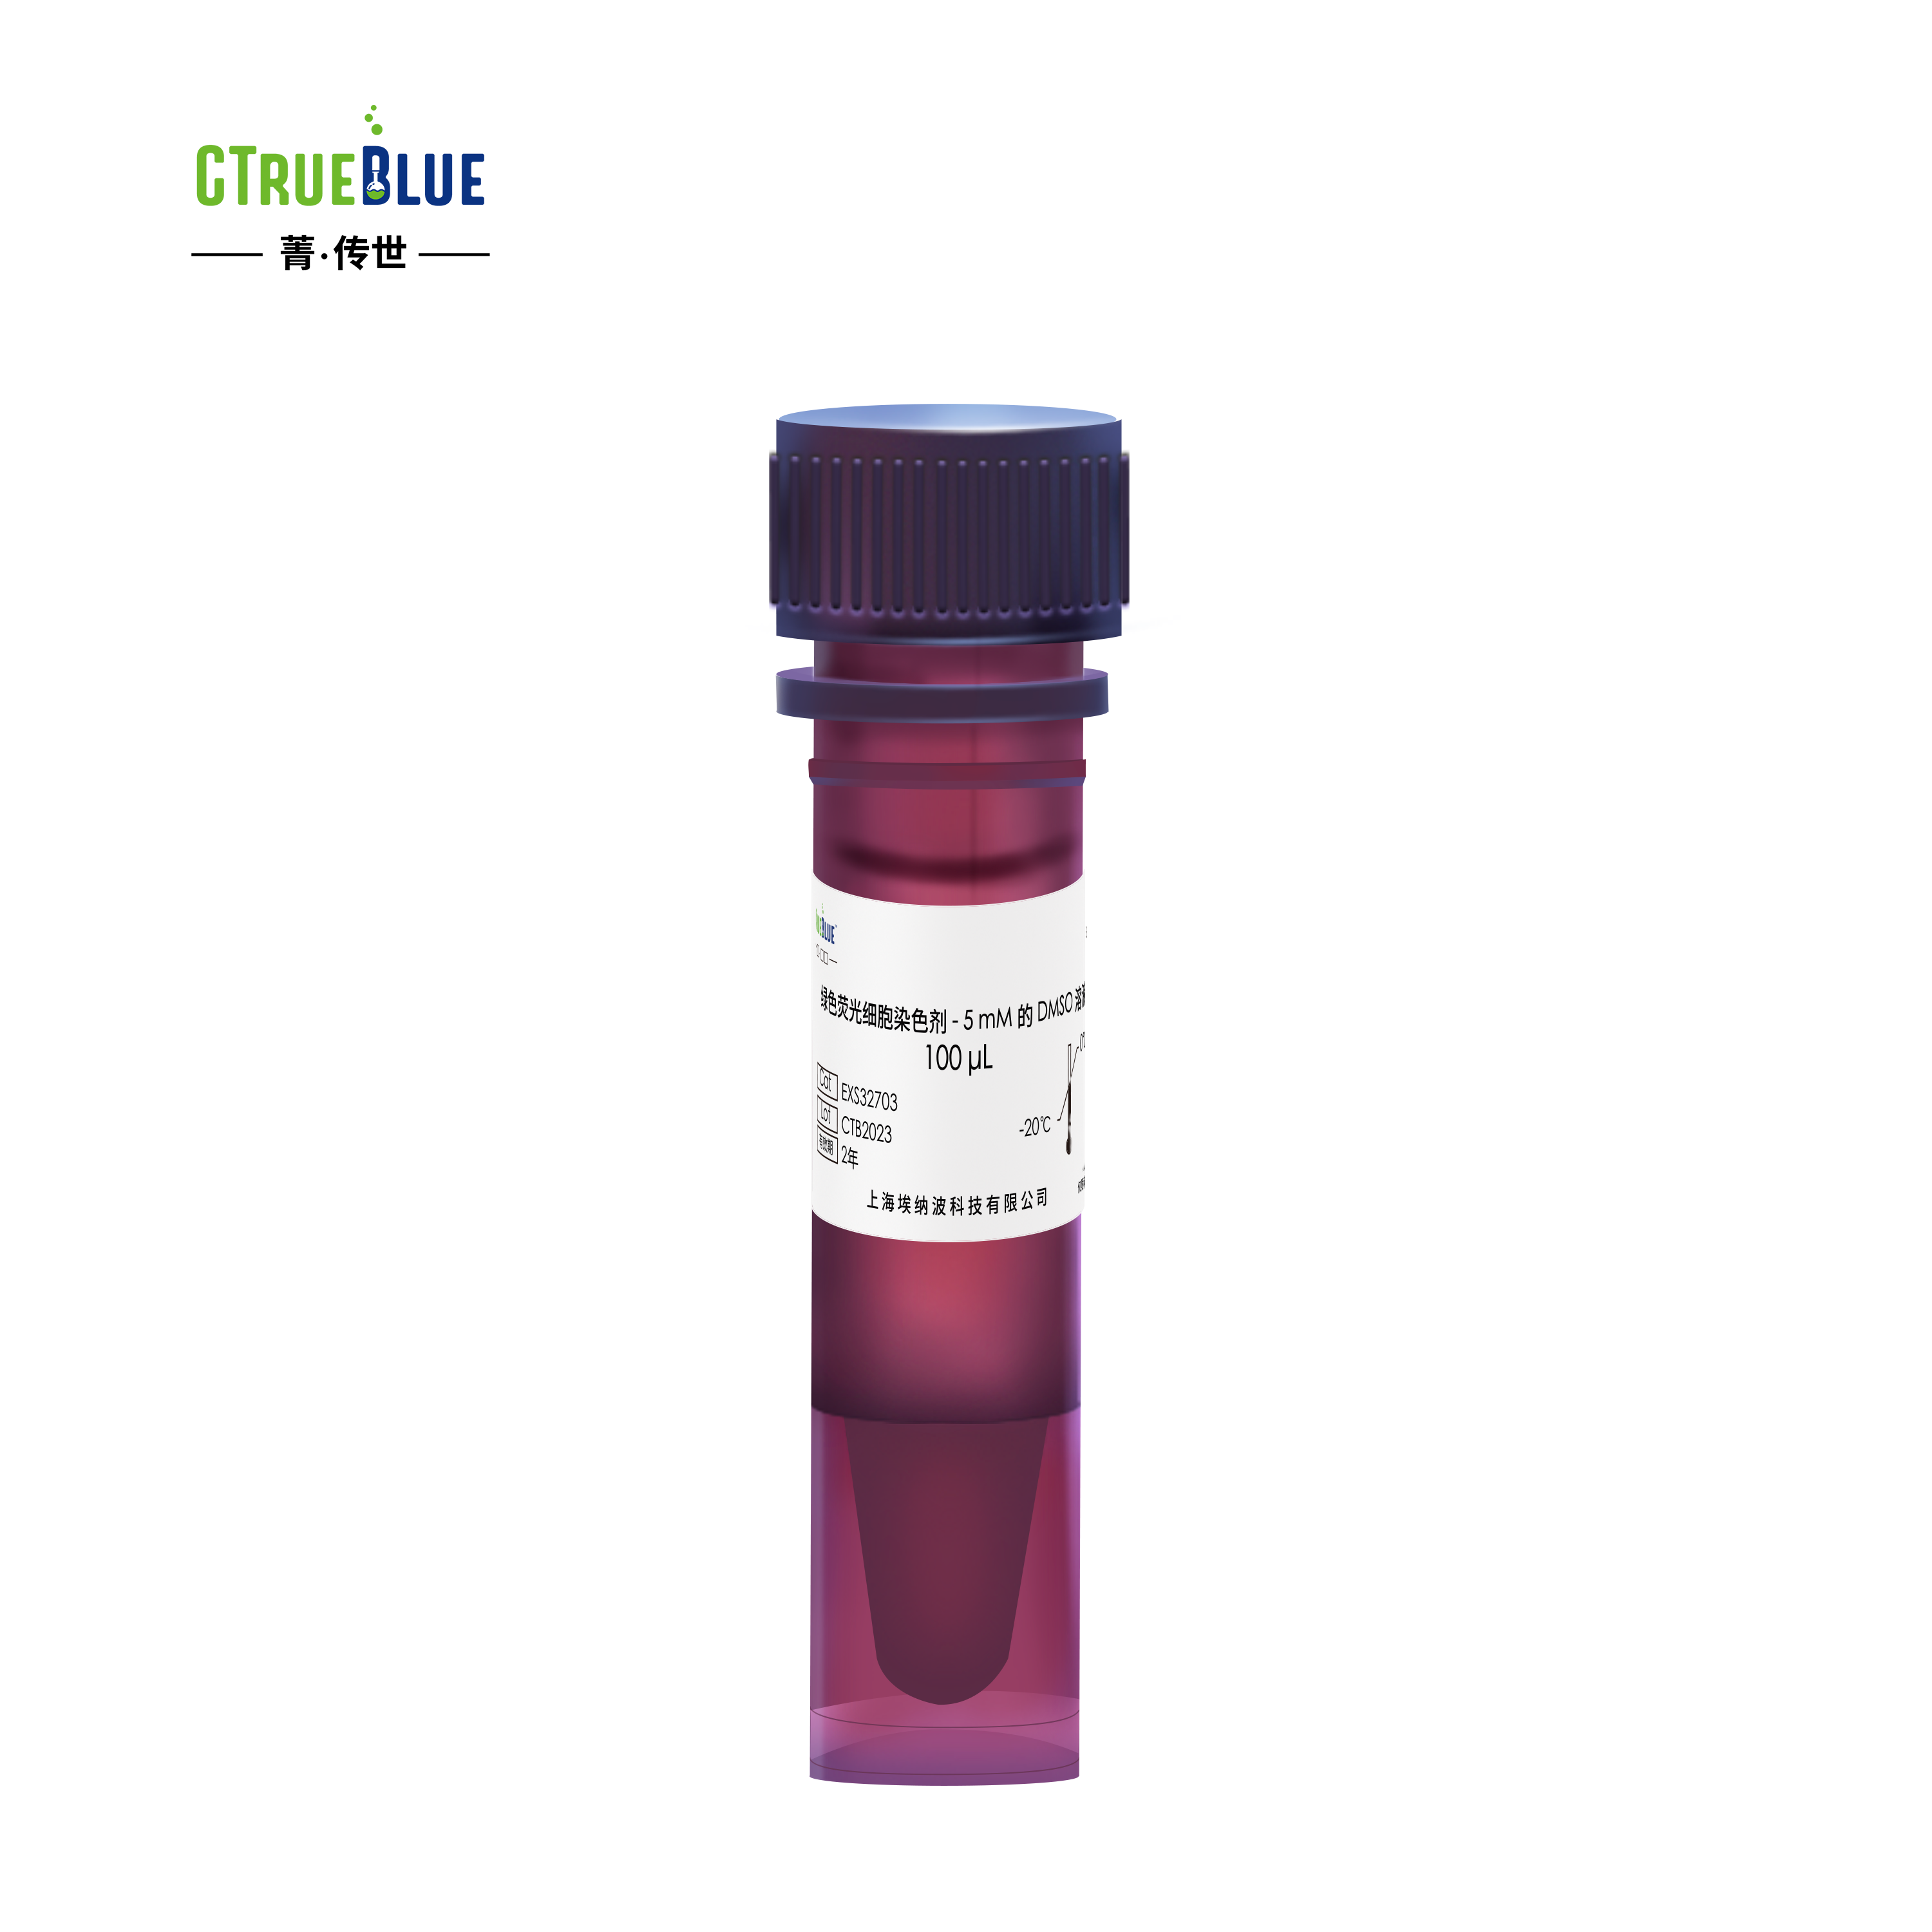 Green 荧光细胞染色剂 - 5 mM 的 DMSO 溶液